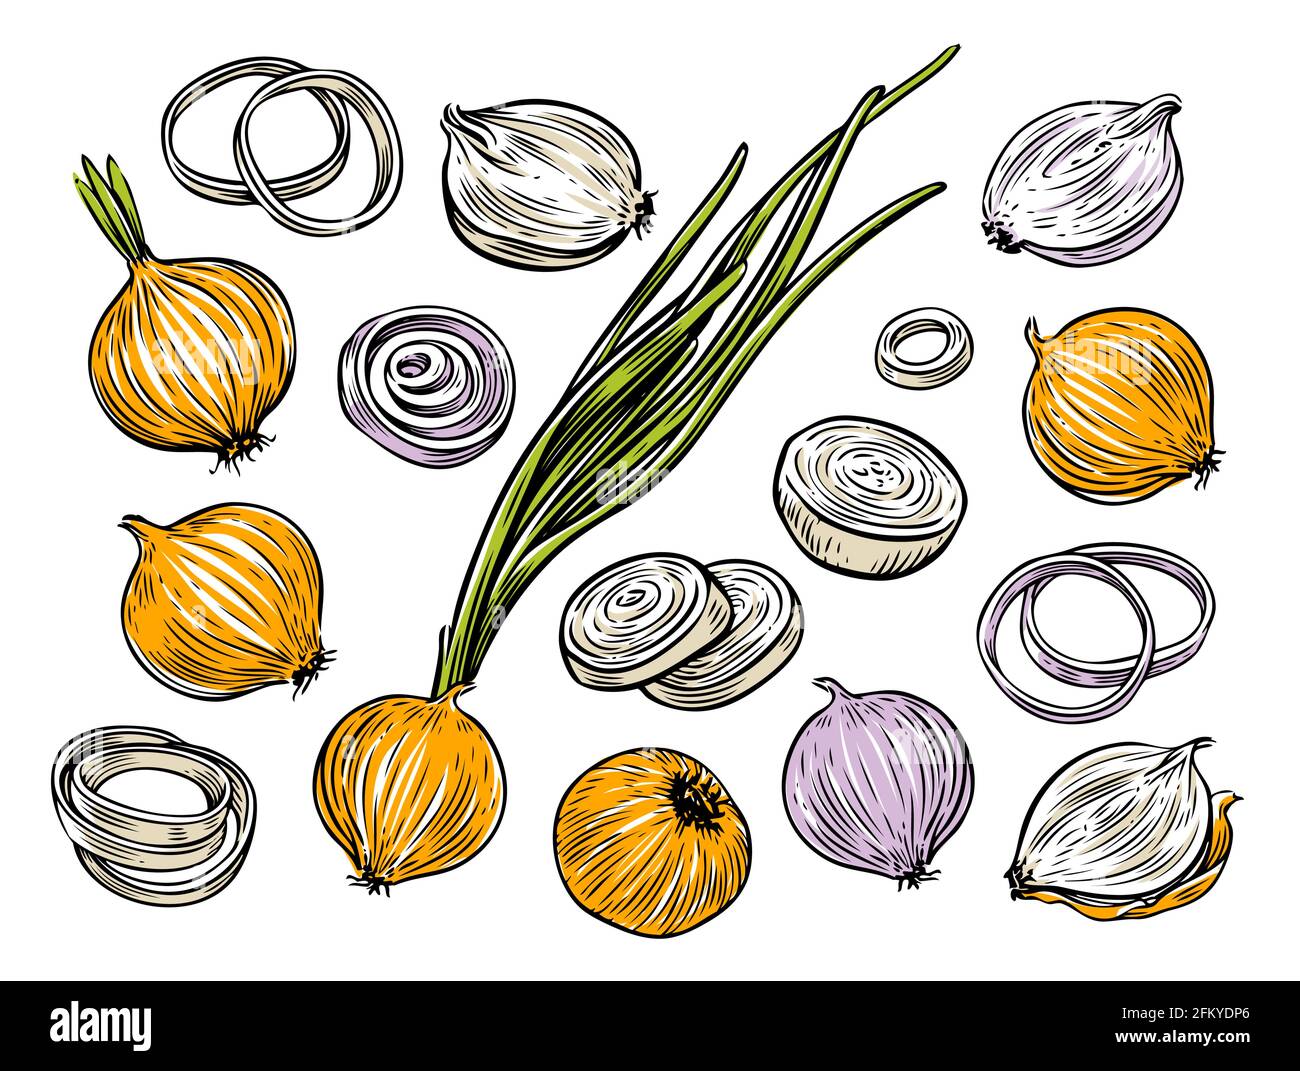 Zwiebelbirne und Ringe. Vektorgrafik für frisches Gemüse Stock Vektor